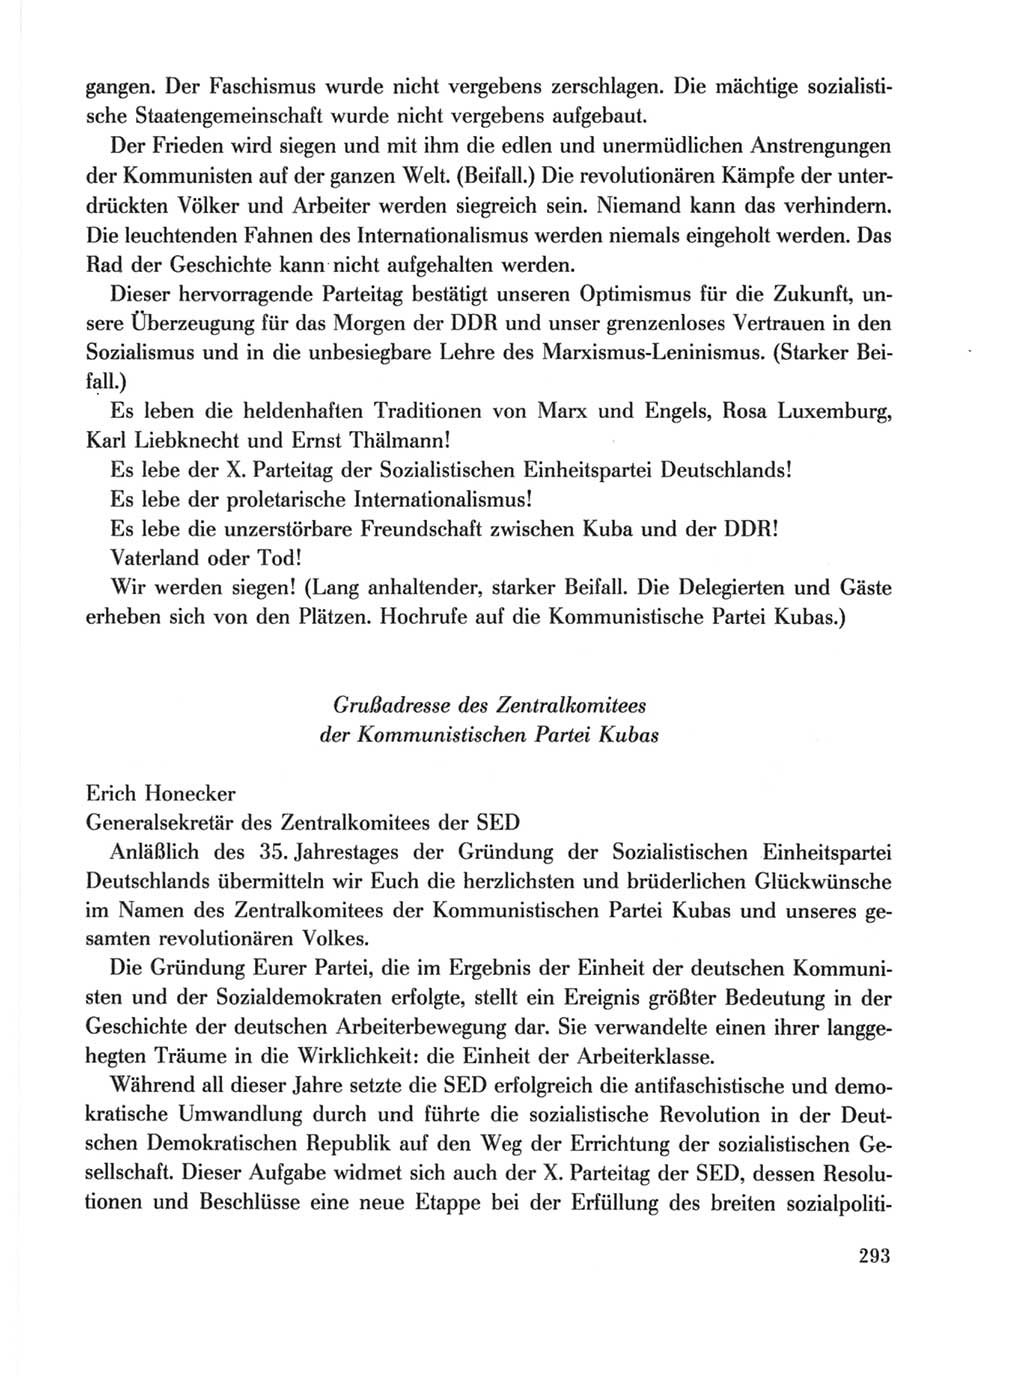 Protokoll der Verhandlungen des Ⅹ. Parteitages der Sozialistischen Einheitspartei Deutschlands (SED) [Deutsche Demokratische Republik (DDR)] 1981, Band 1, Seite 293 (Prot. Verh. Ⅹ. PT SED DDR 1981, Bd. 1, S. 293)